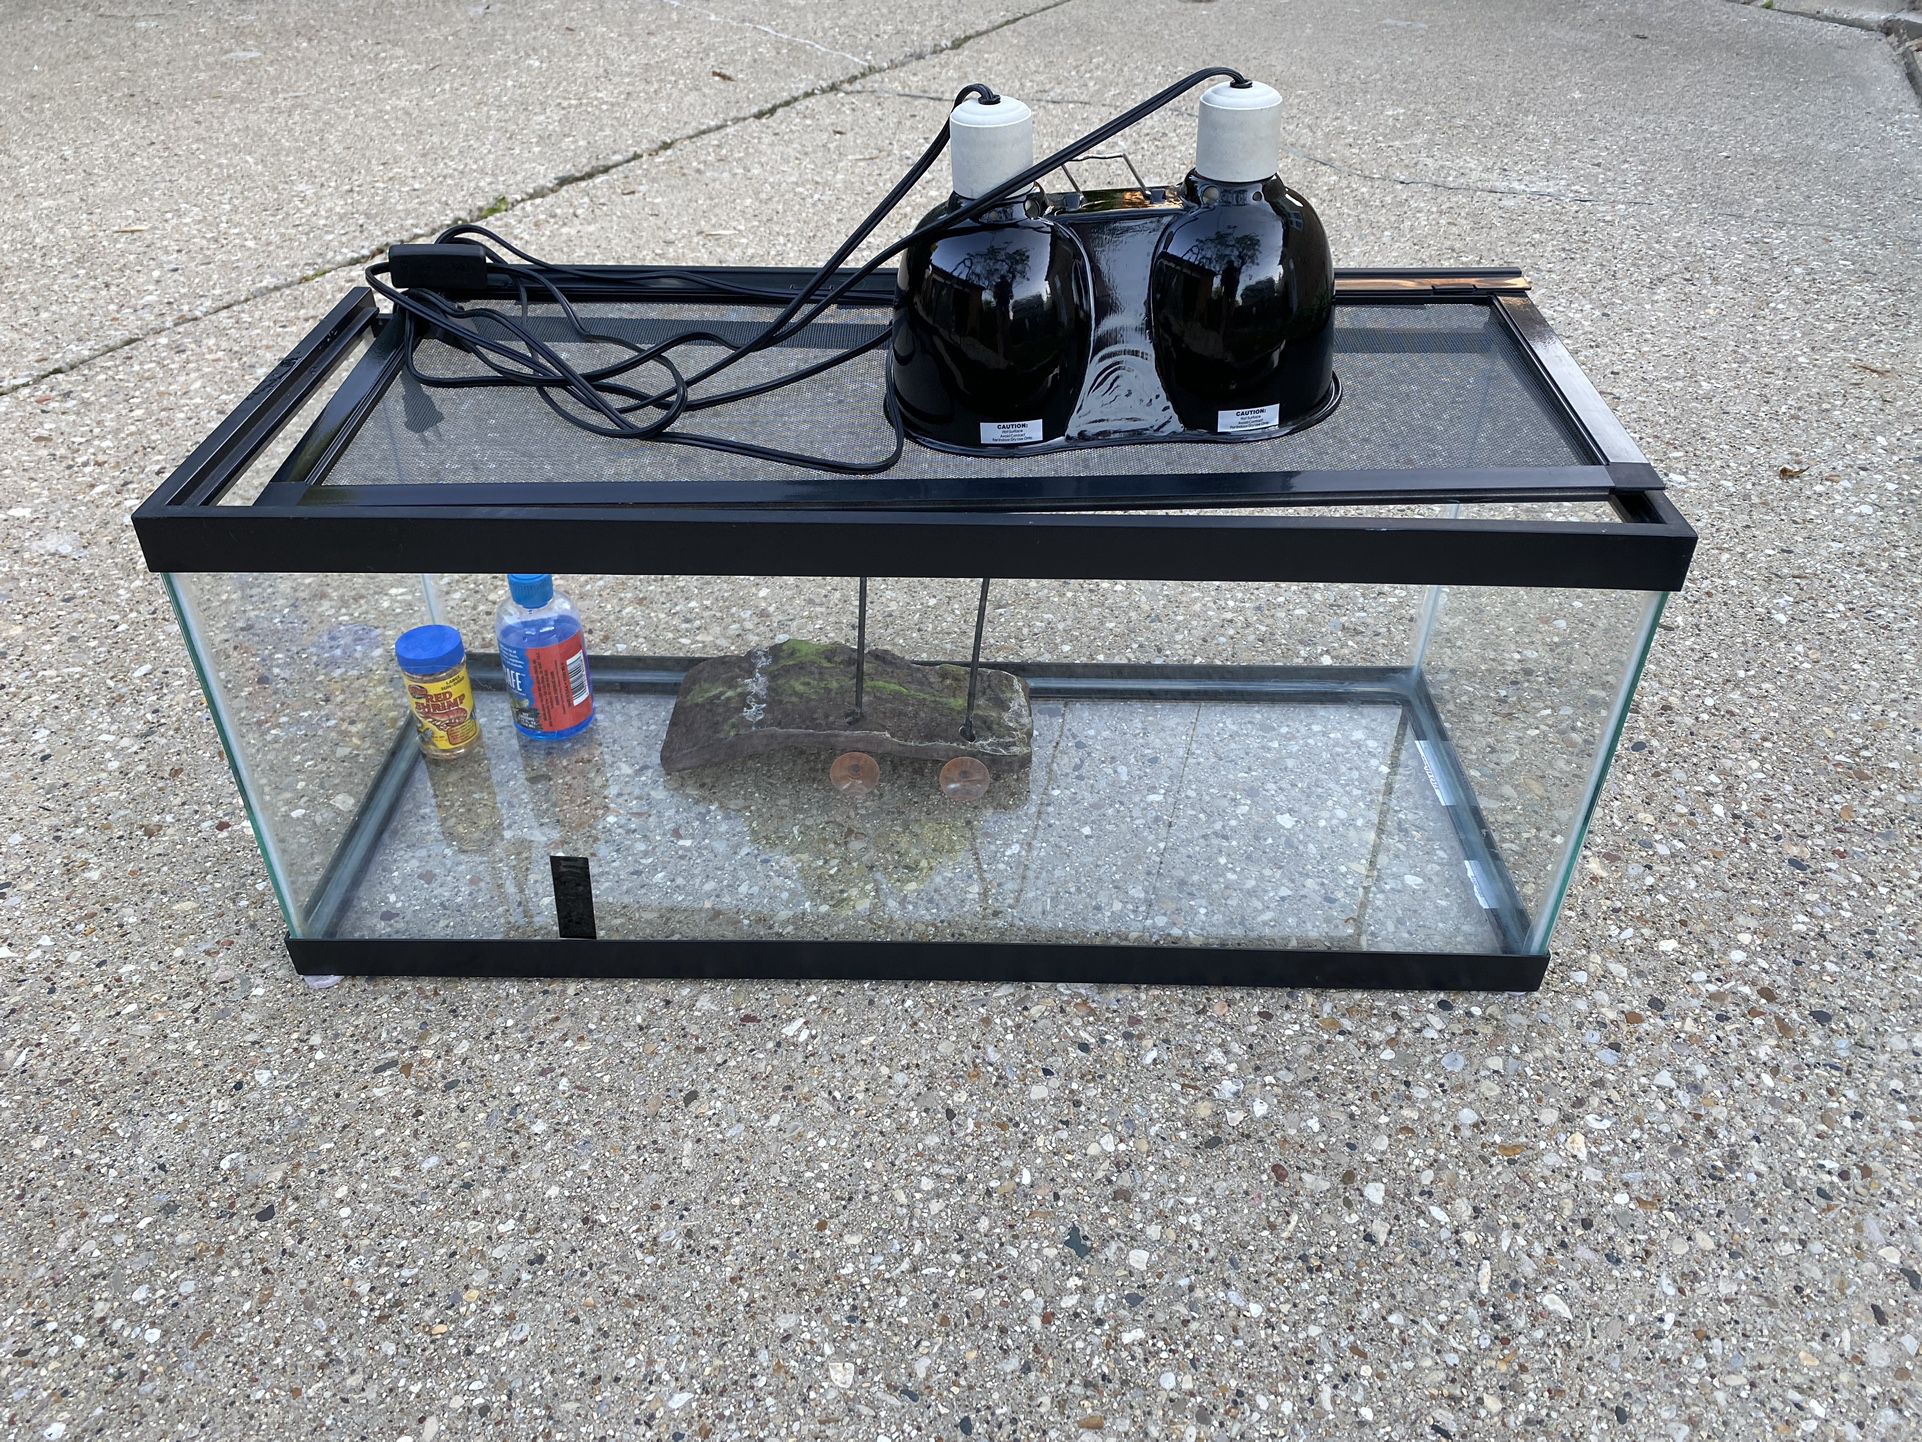 Fish Tank/Zoo Med Aquatic Turtle ReptiHabitat, 20 Gallon